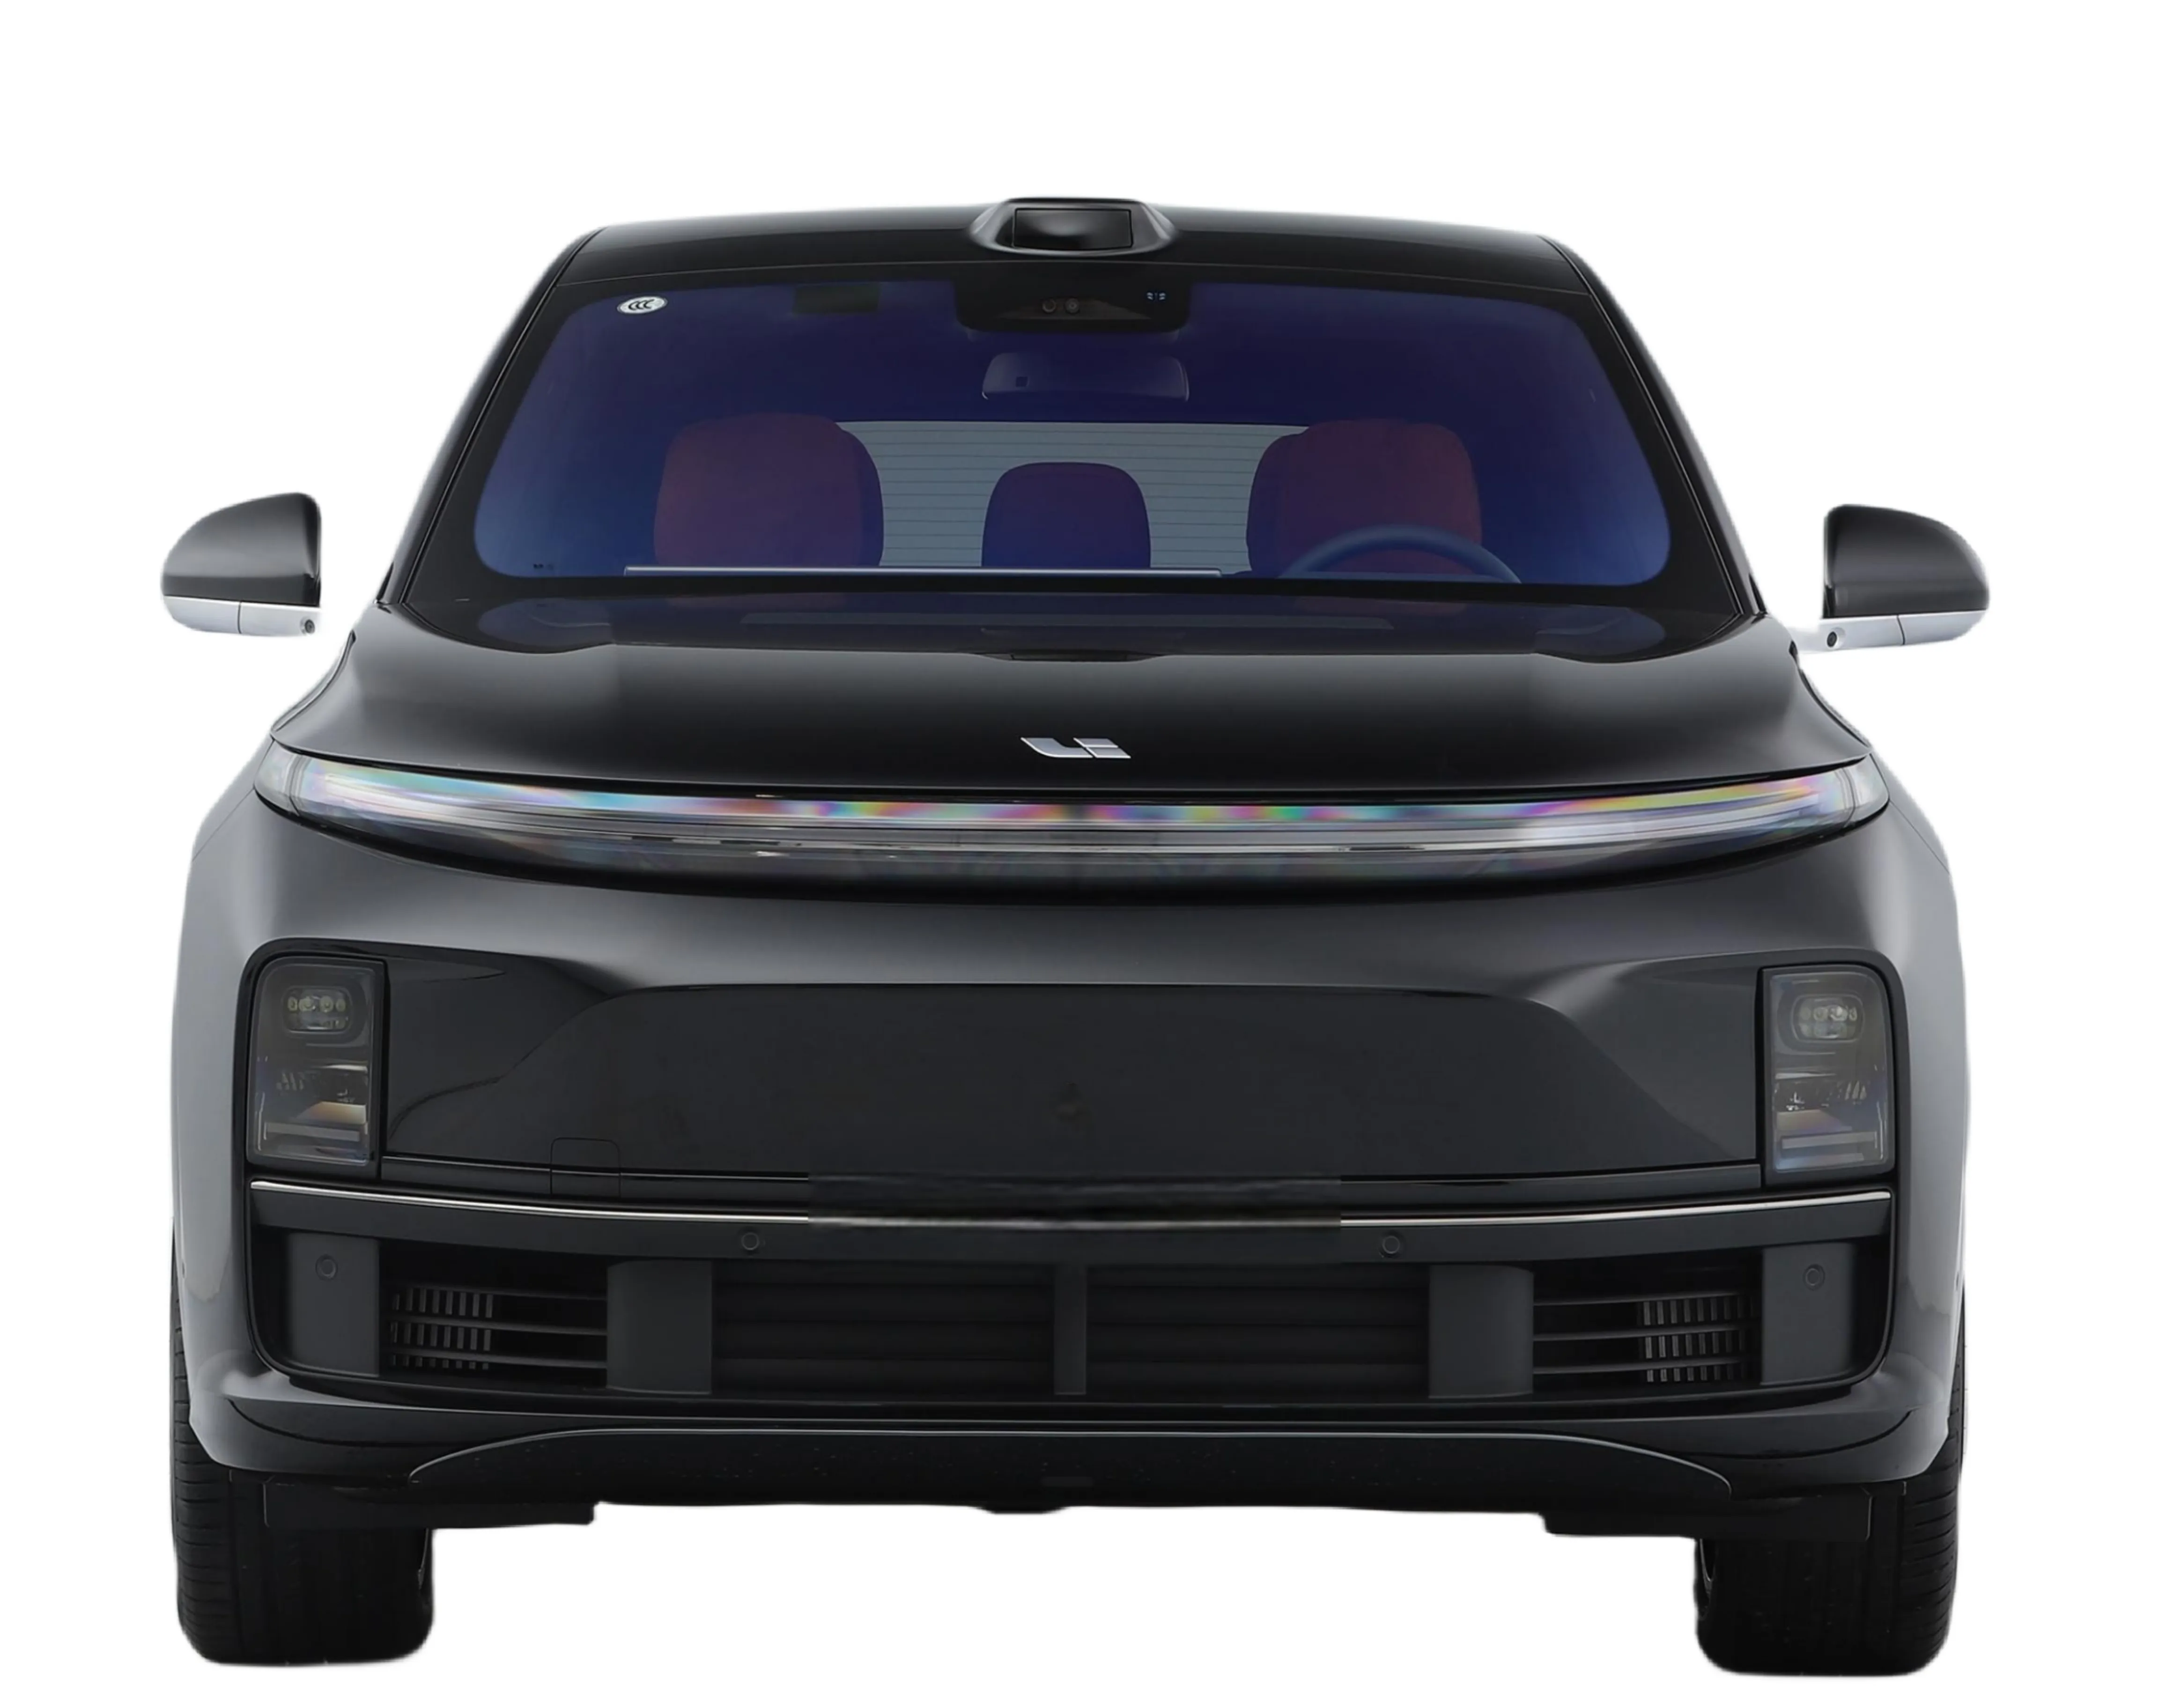 2023 SUV ideal L7 Max 210 km Bateria de lítio ternária para veículos automotivos baratos carros ev carros usados